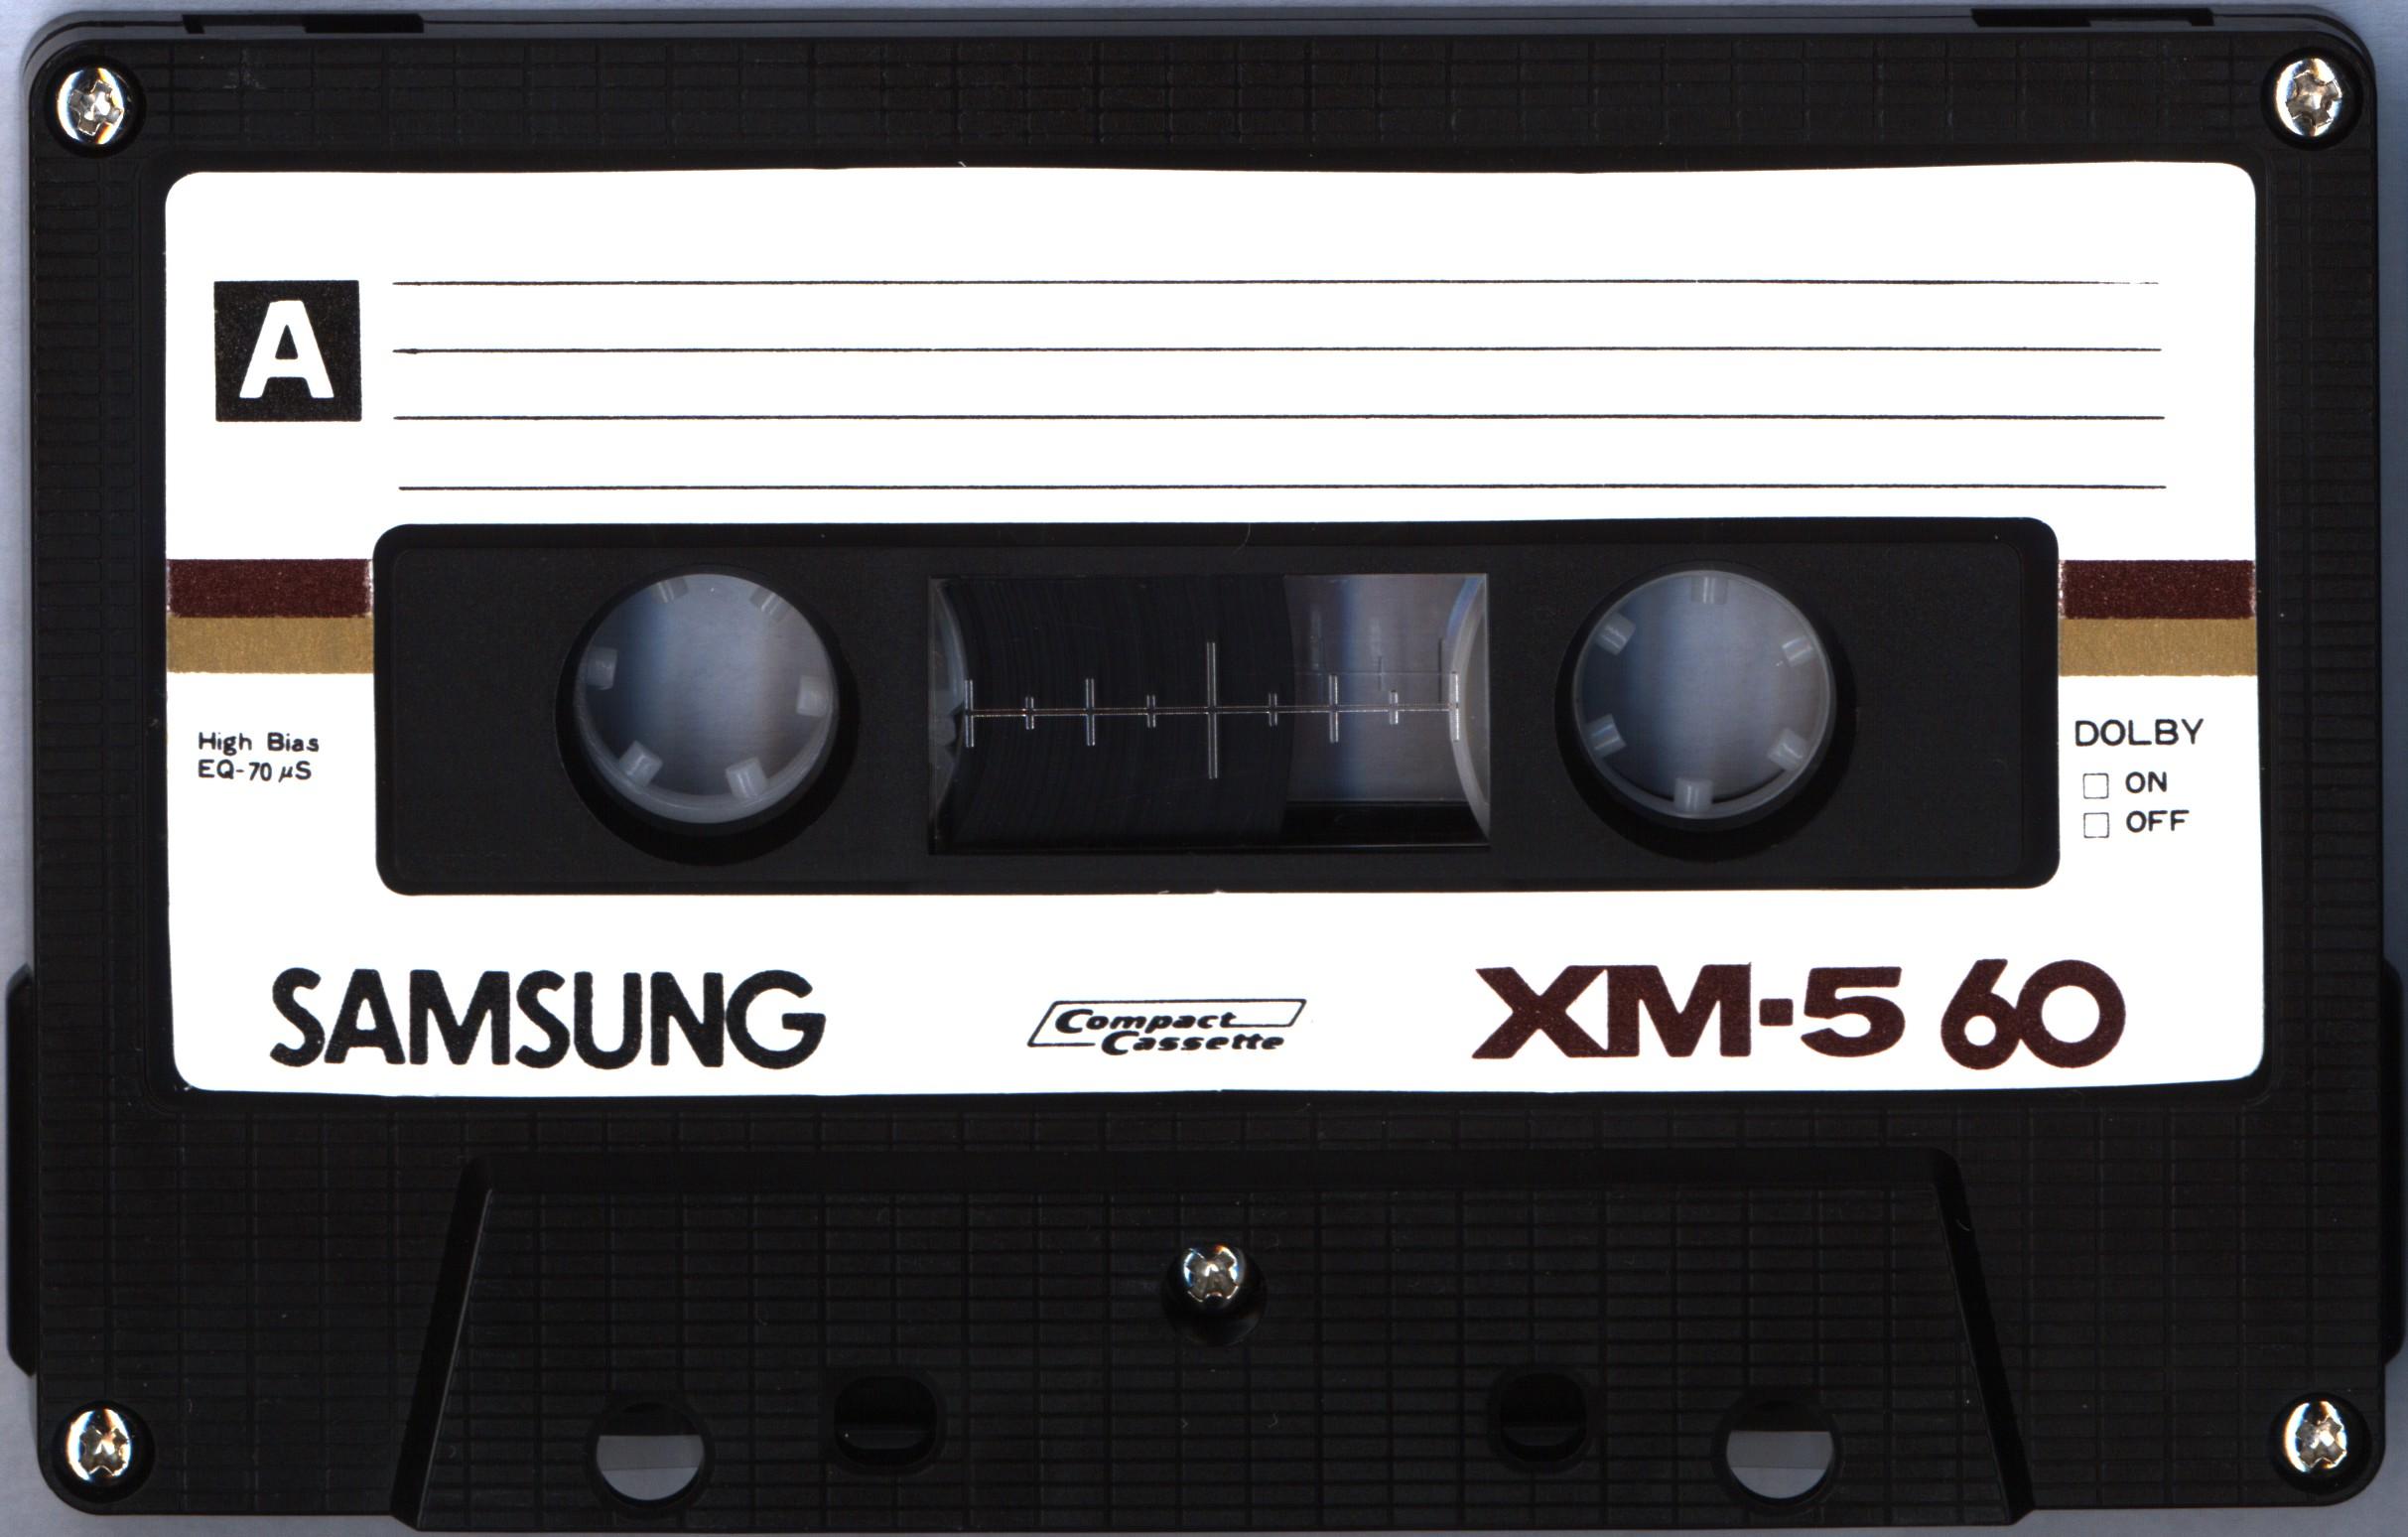 Samsung XM-5 60 (1985)